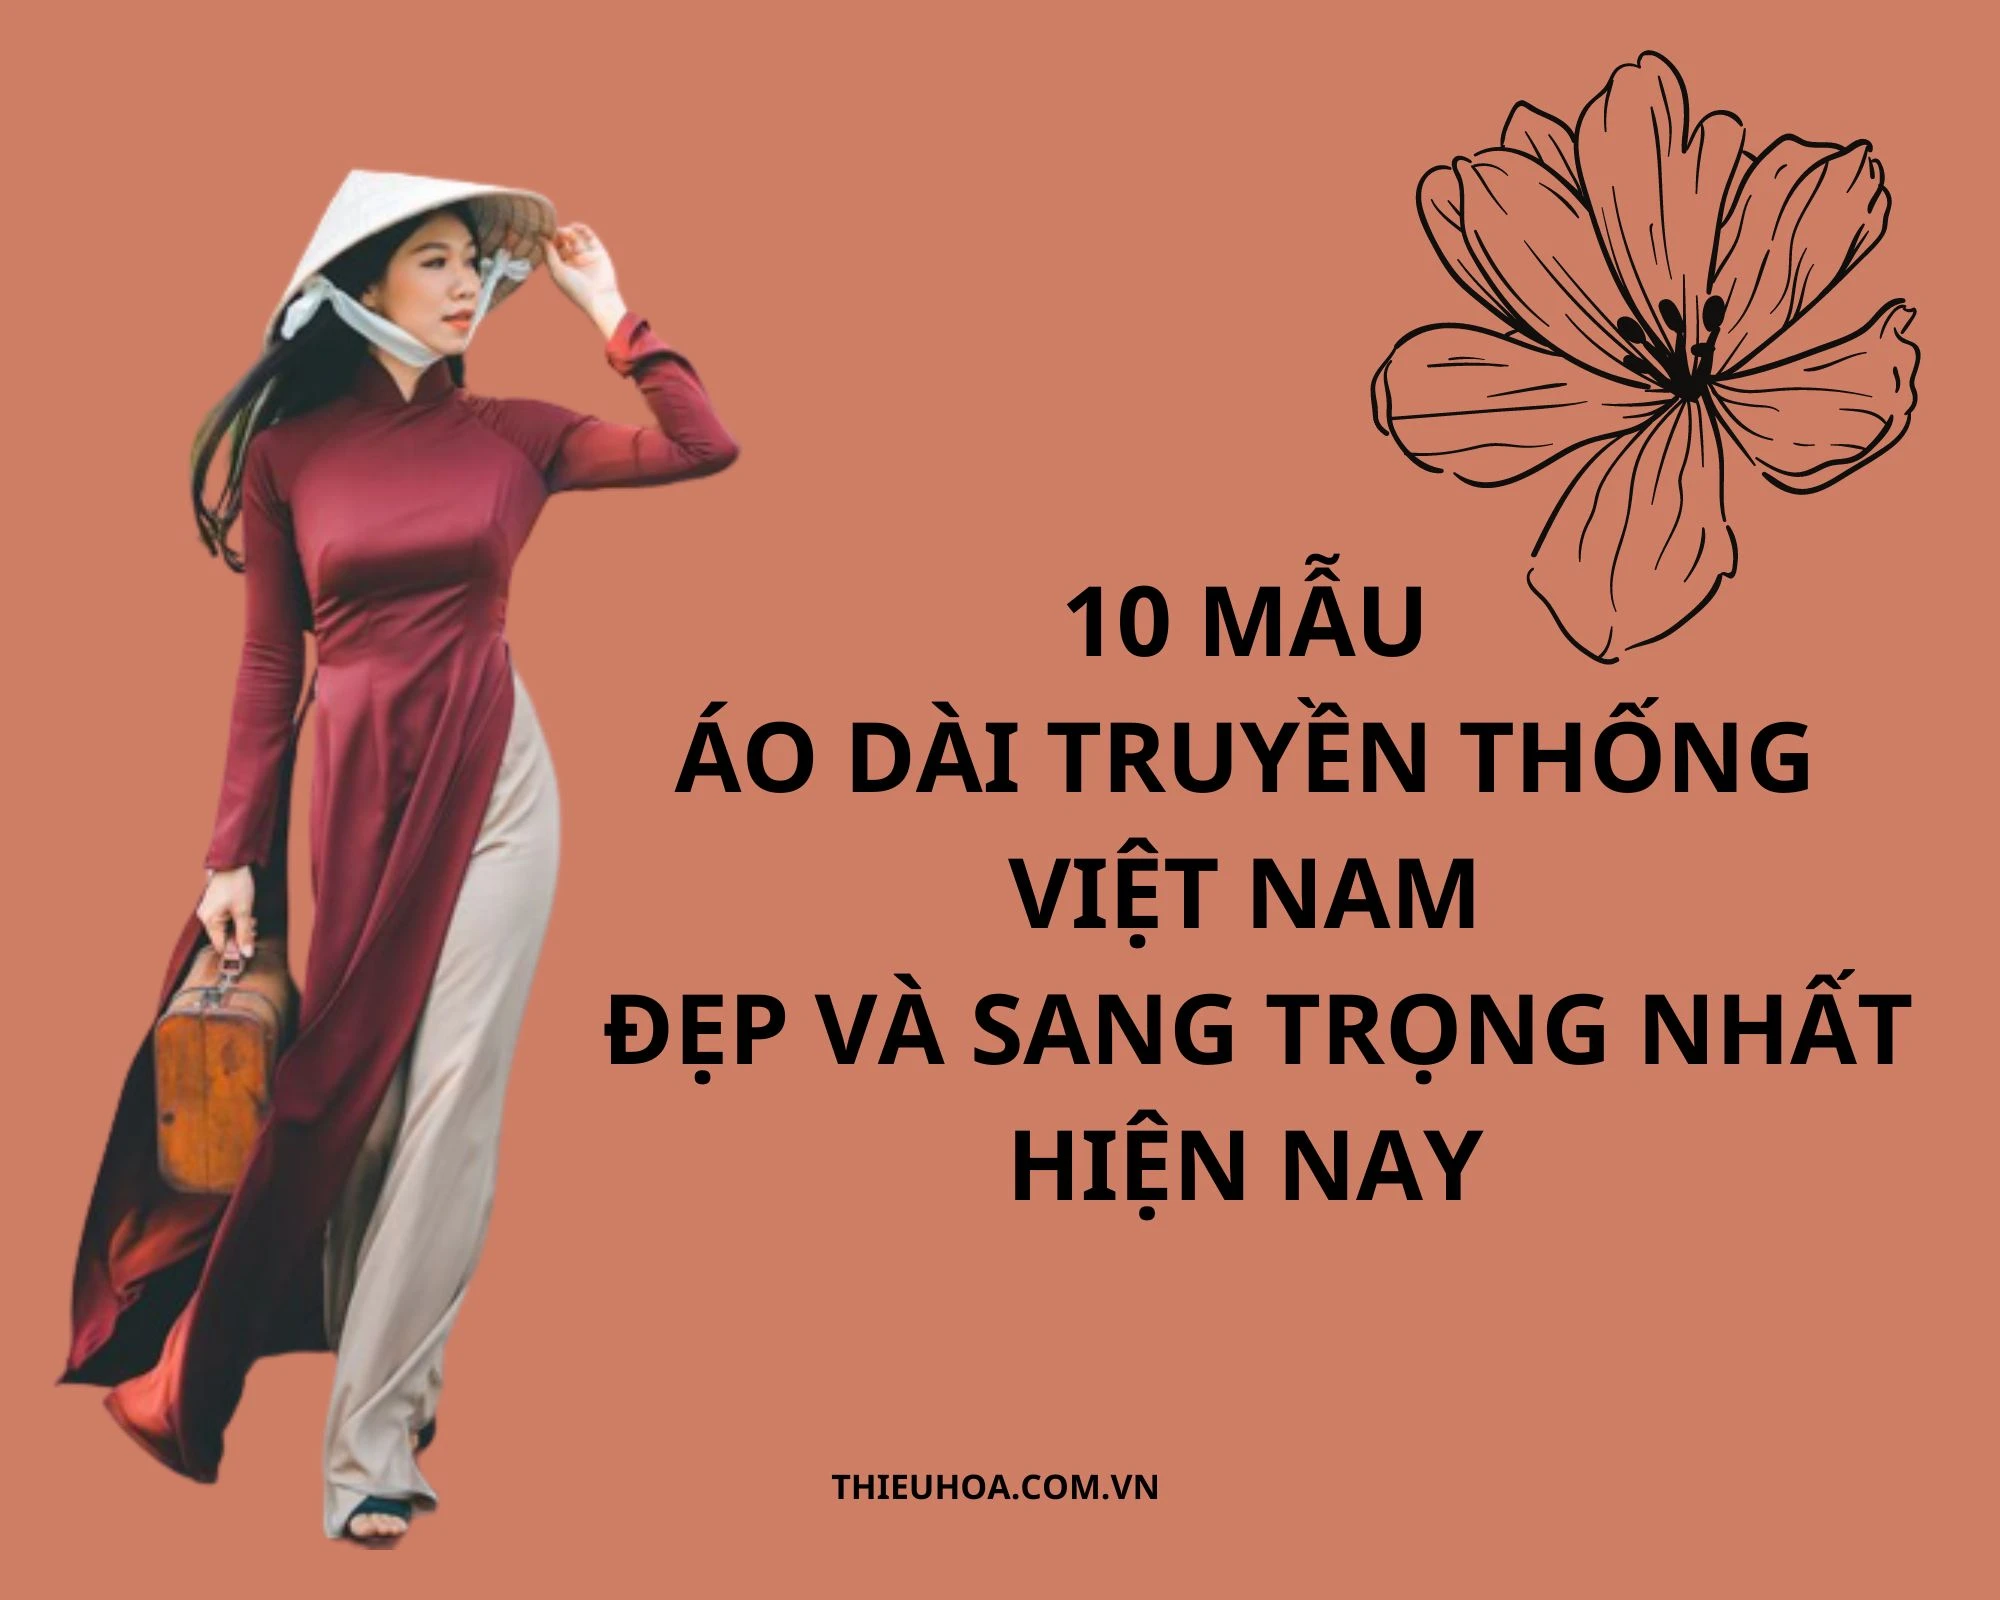 10 mẫu áo dài truyền thống Việt Nam đẹp và sang trọng nhất